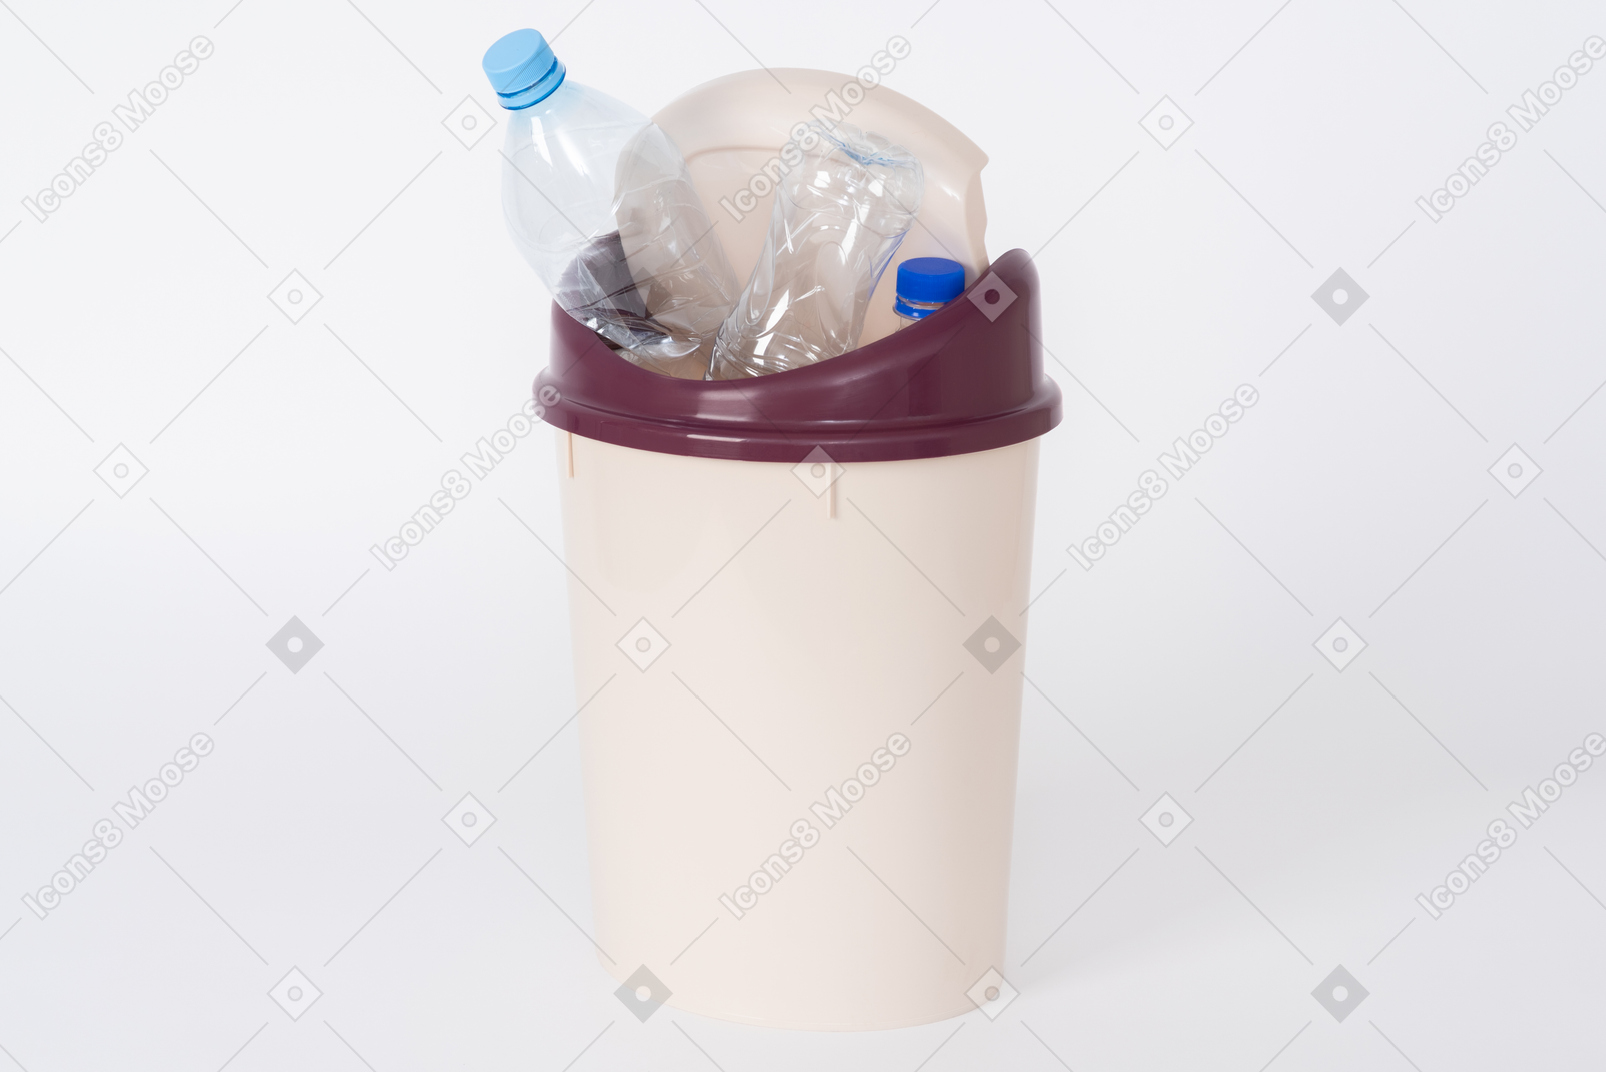 ペットボトルがいっぱい入った茶色のプラスチック製ゴミ箱